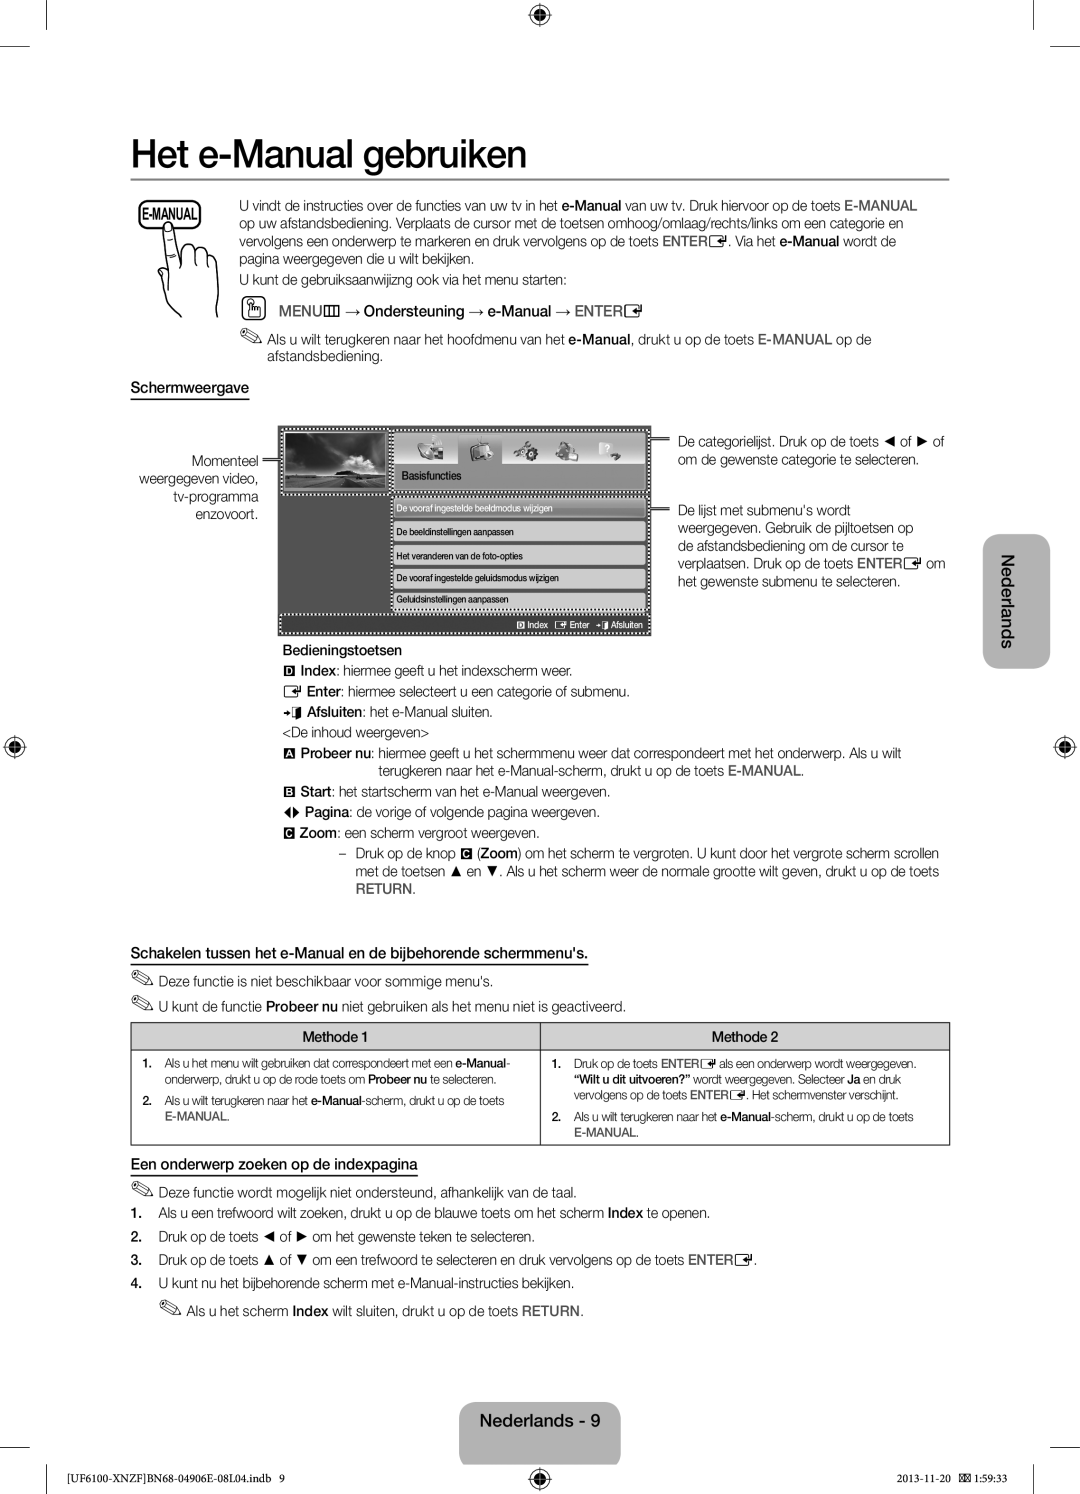 Samsung UE60F6100AWXBT Het e-Manual gebruiken, OO MENUm→ Ondersteuning → e-Manual → ENTERE, Schermweergave, Nederlands 